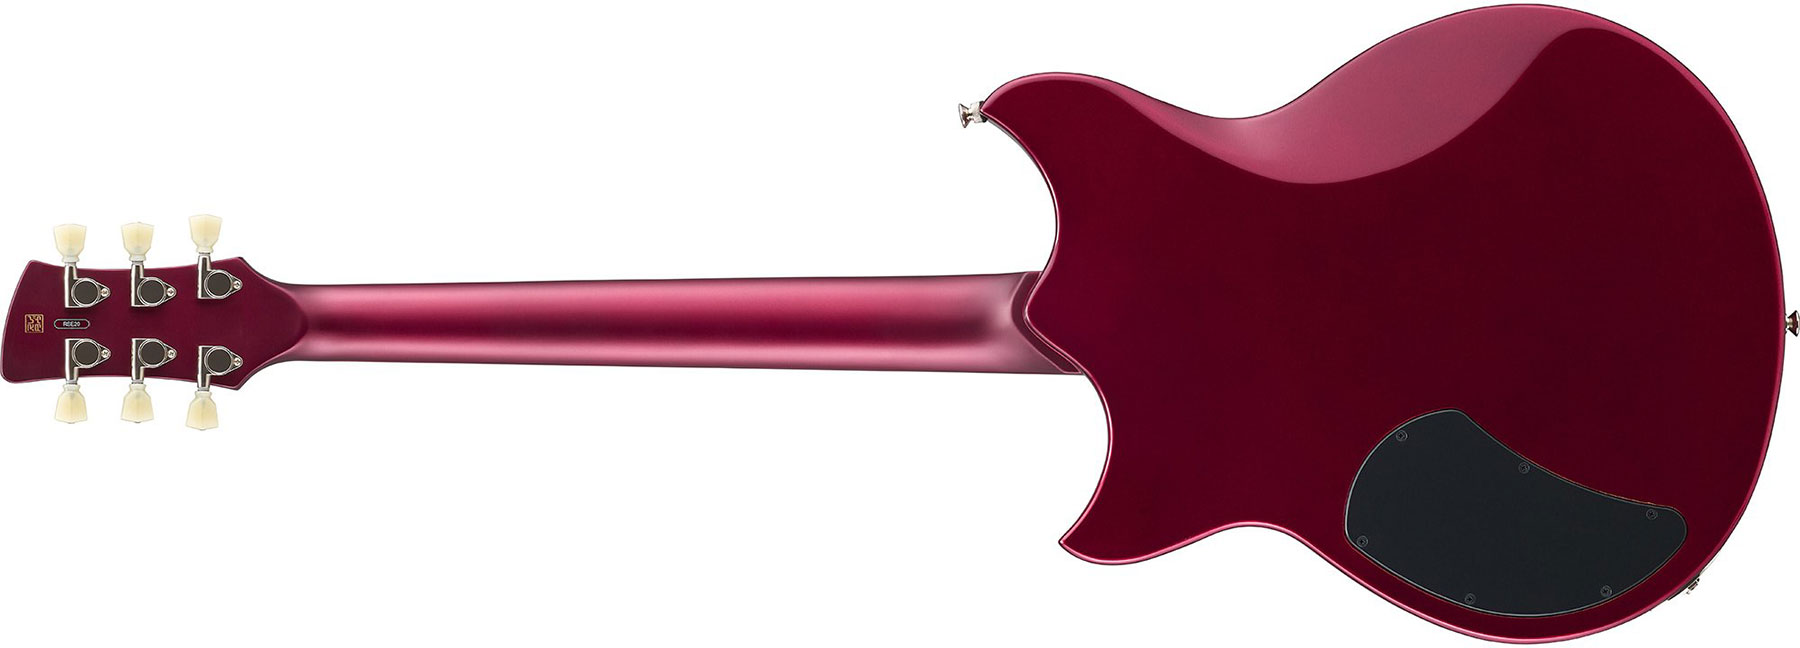 Yamaha Rse20 Revstar Element Hh Ht Rw - Red Copper - Guitare Électrique Double Cut - Variation 2